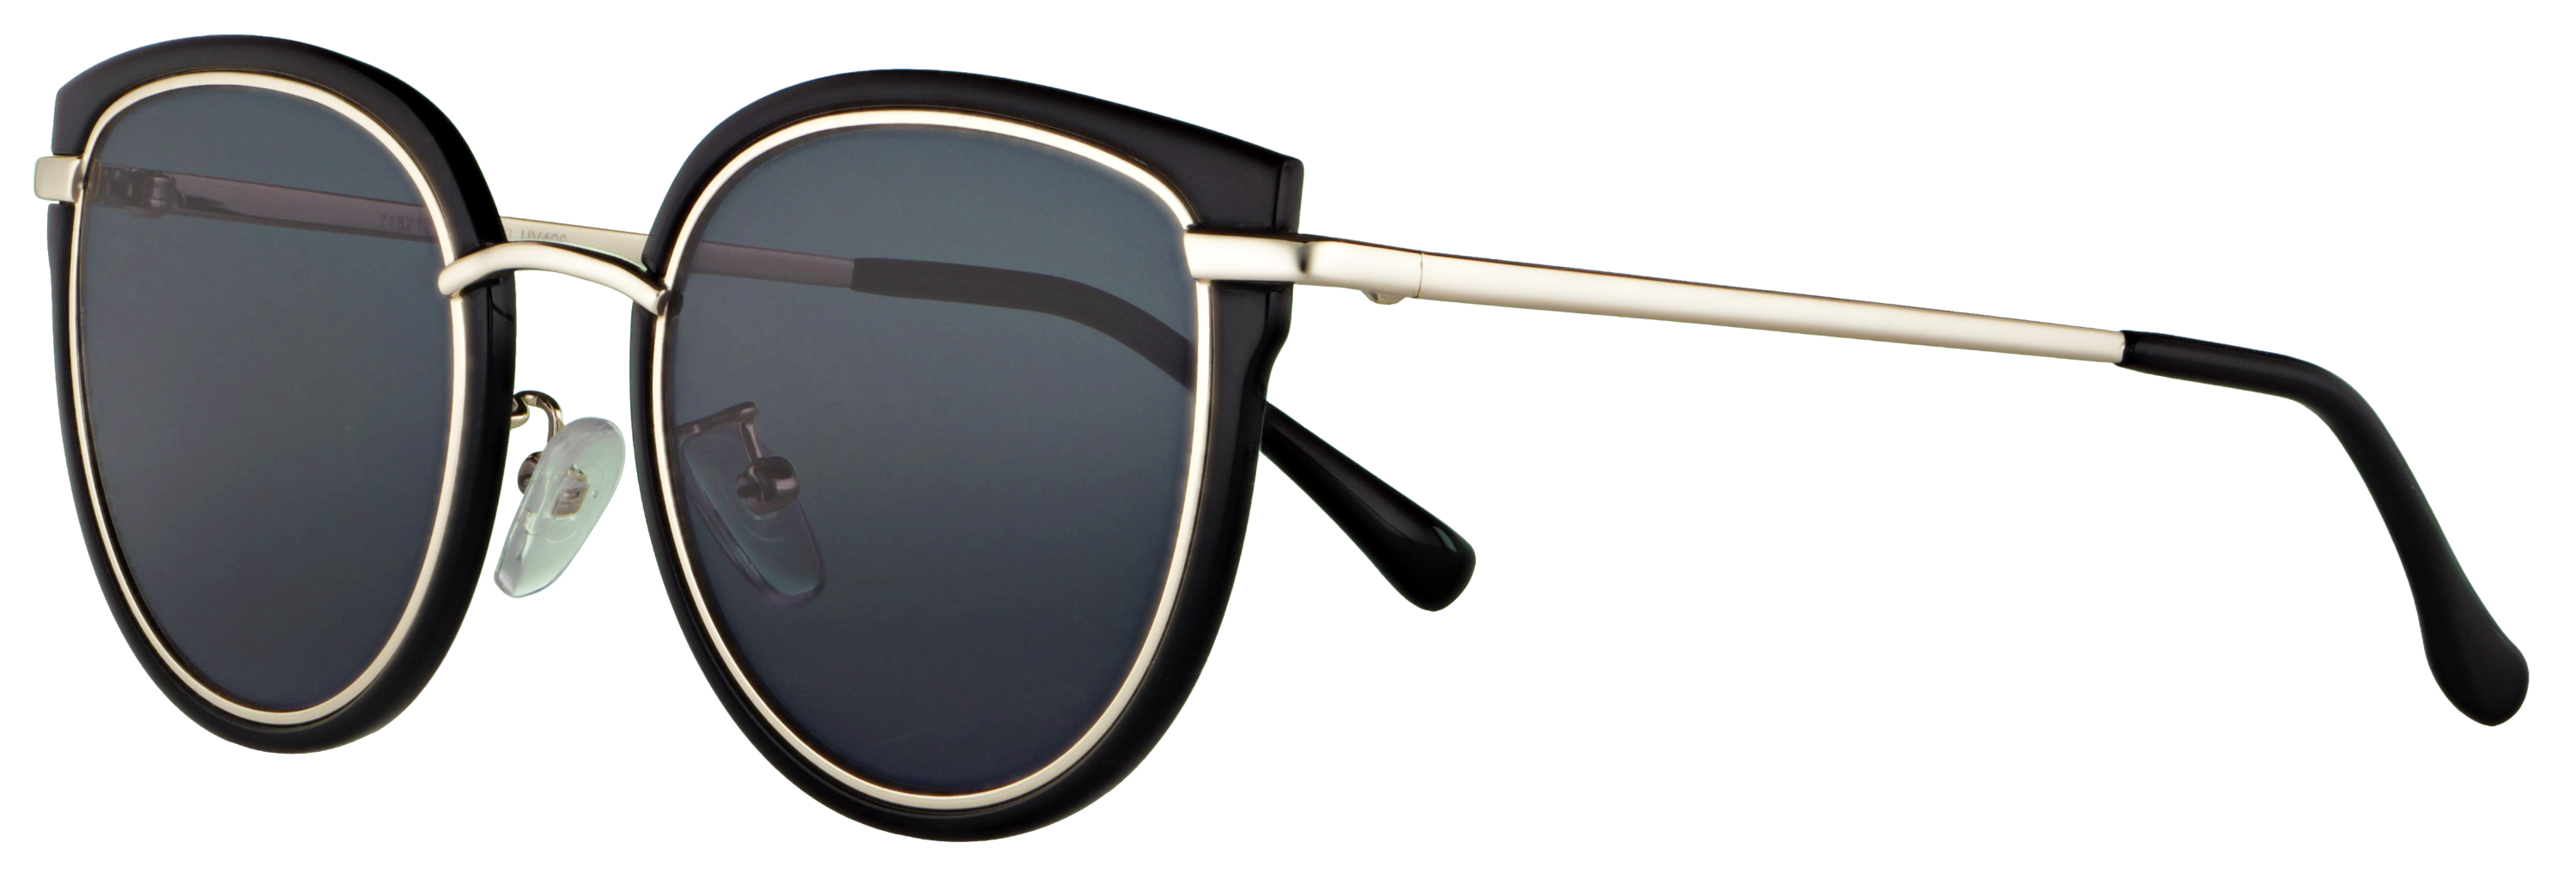 Das Bild zeigt die Sonnenbrille 718212 von der Marke Abele Optik in gold / schwarz.